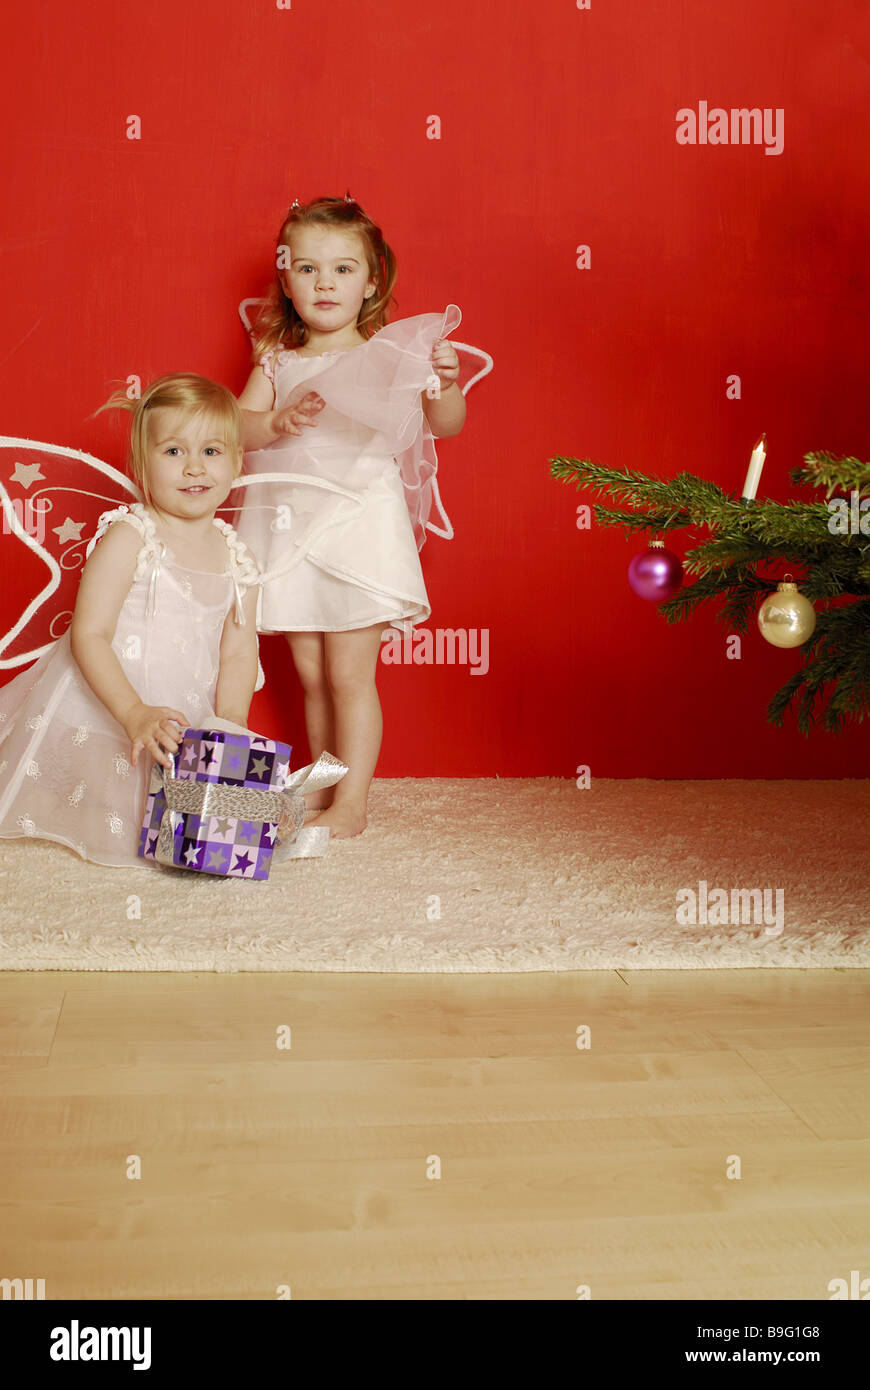 Weihnachten Mädchen zwei Verkleidung Engel Geschenk Spannung Serie Menschen  Kinder Kleinkinder sitzen Kleid Engel Flügel Weihnachten-Engel  Stockfotografie - Alamy